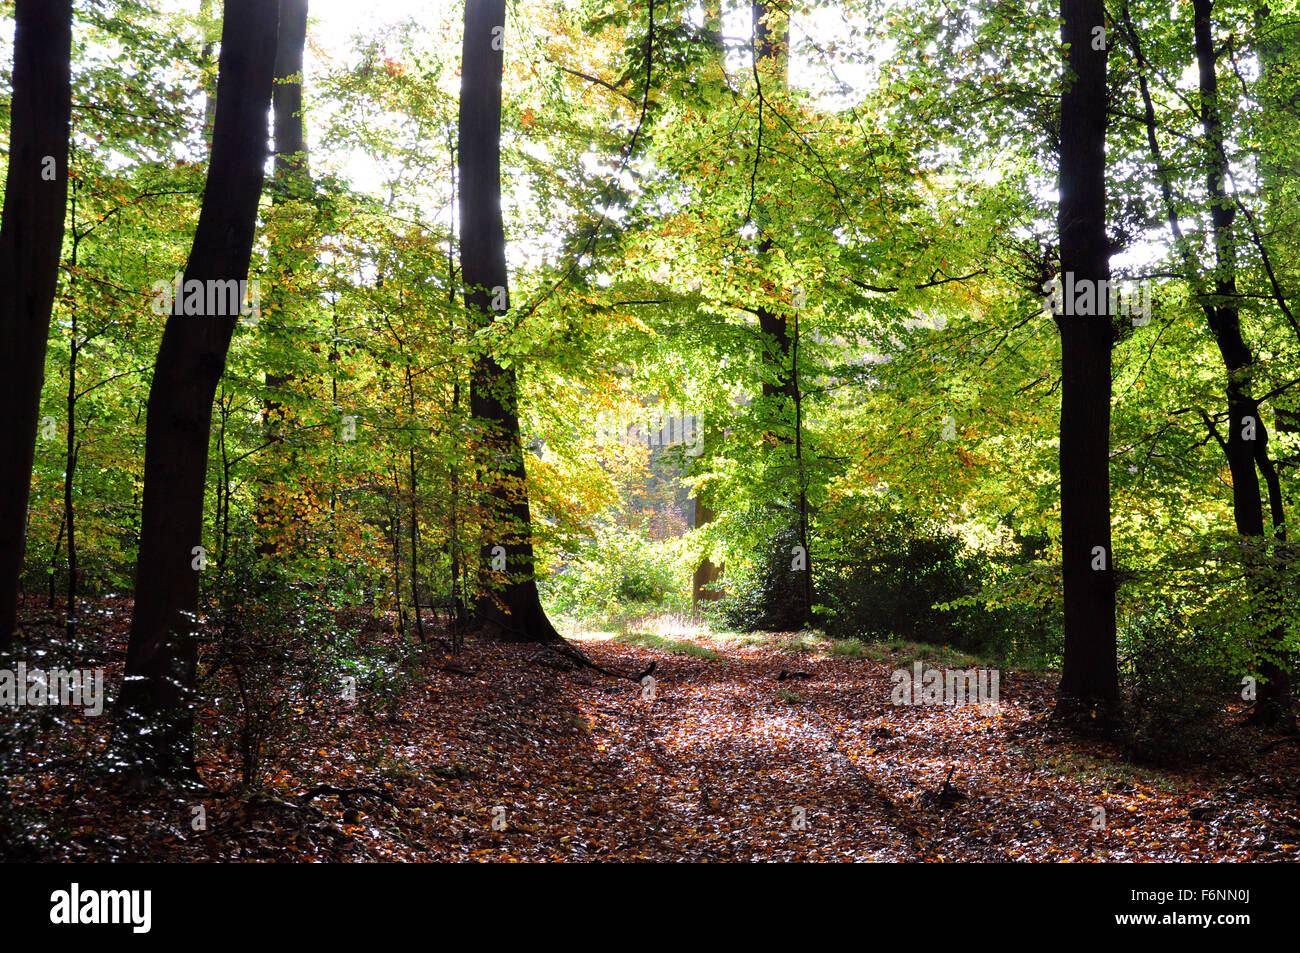 Bucks - Chiltern Hills - boschi di faggio - sentiero - autunno sfumature di verde russet marrone - tappeto di foglie - contro la luce Foto Stock